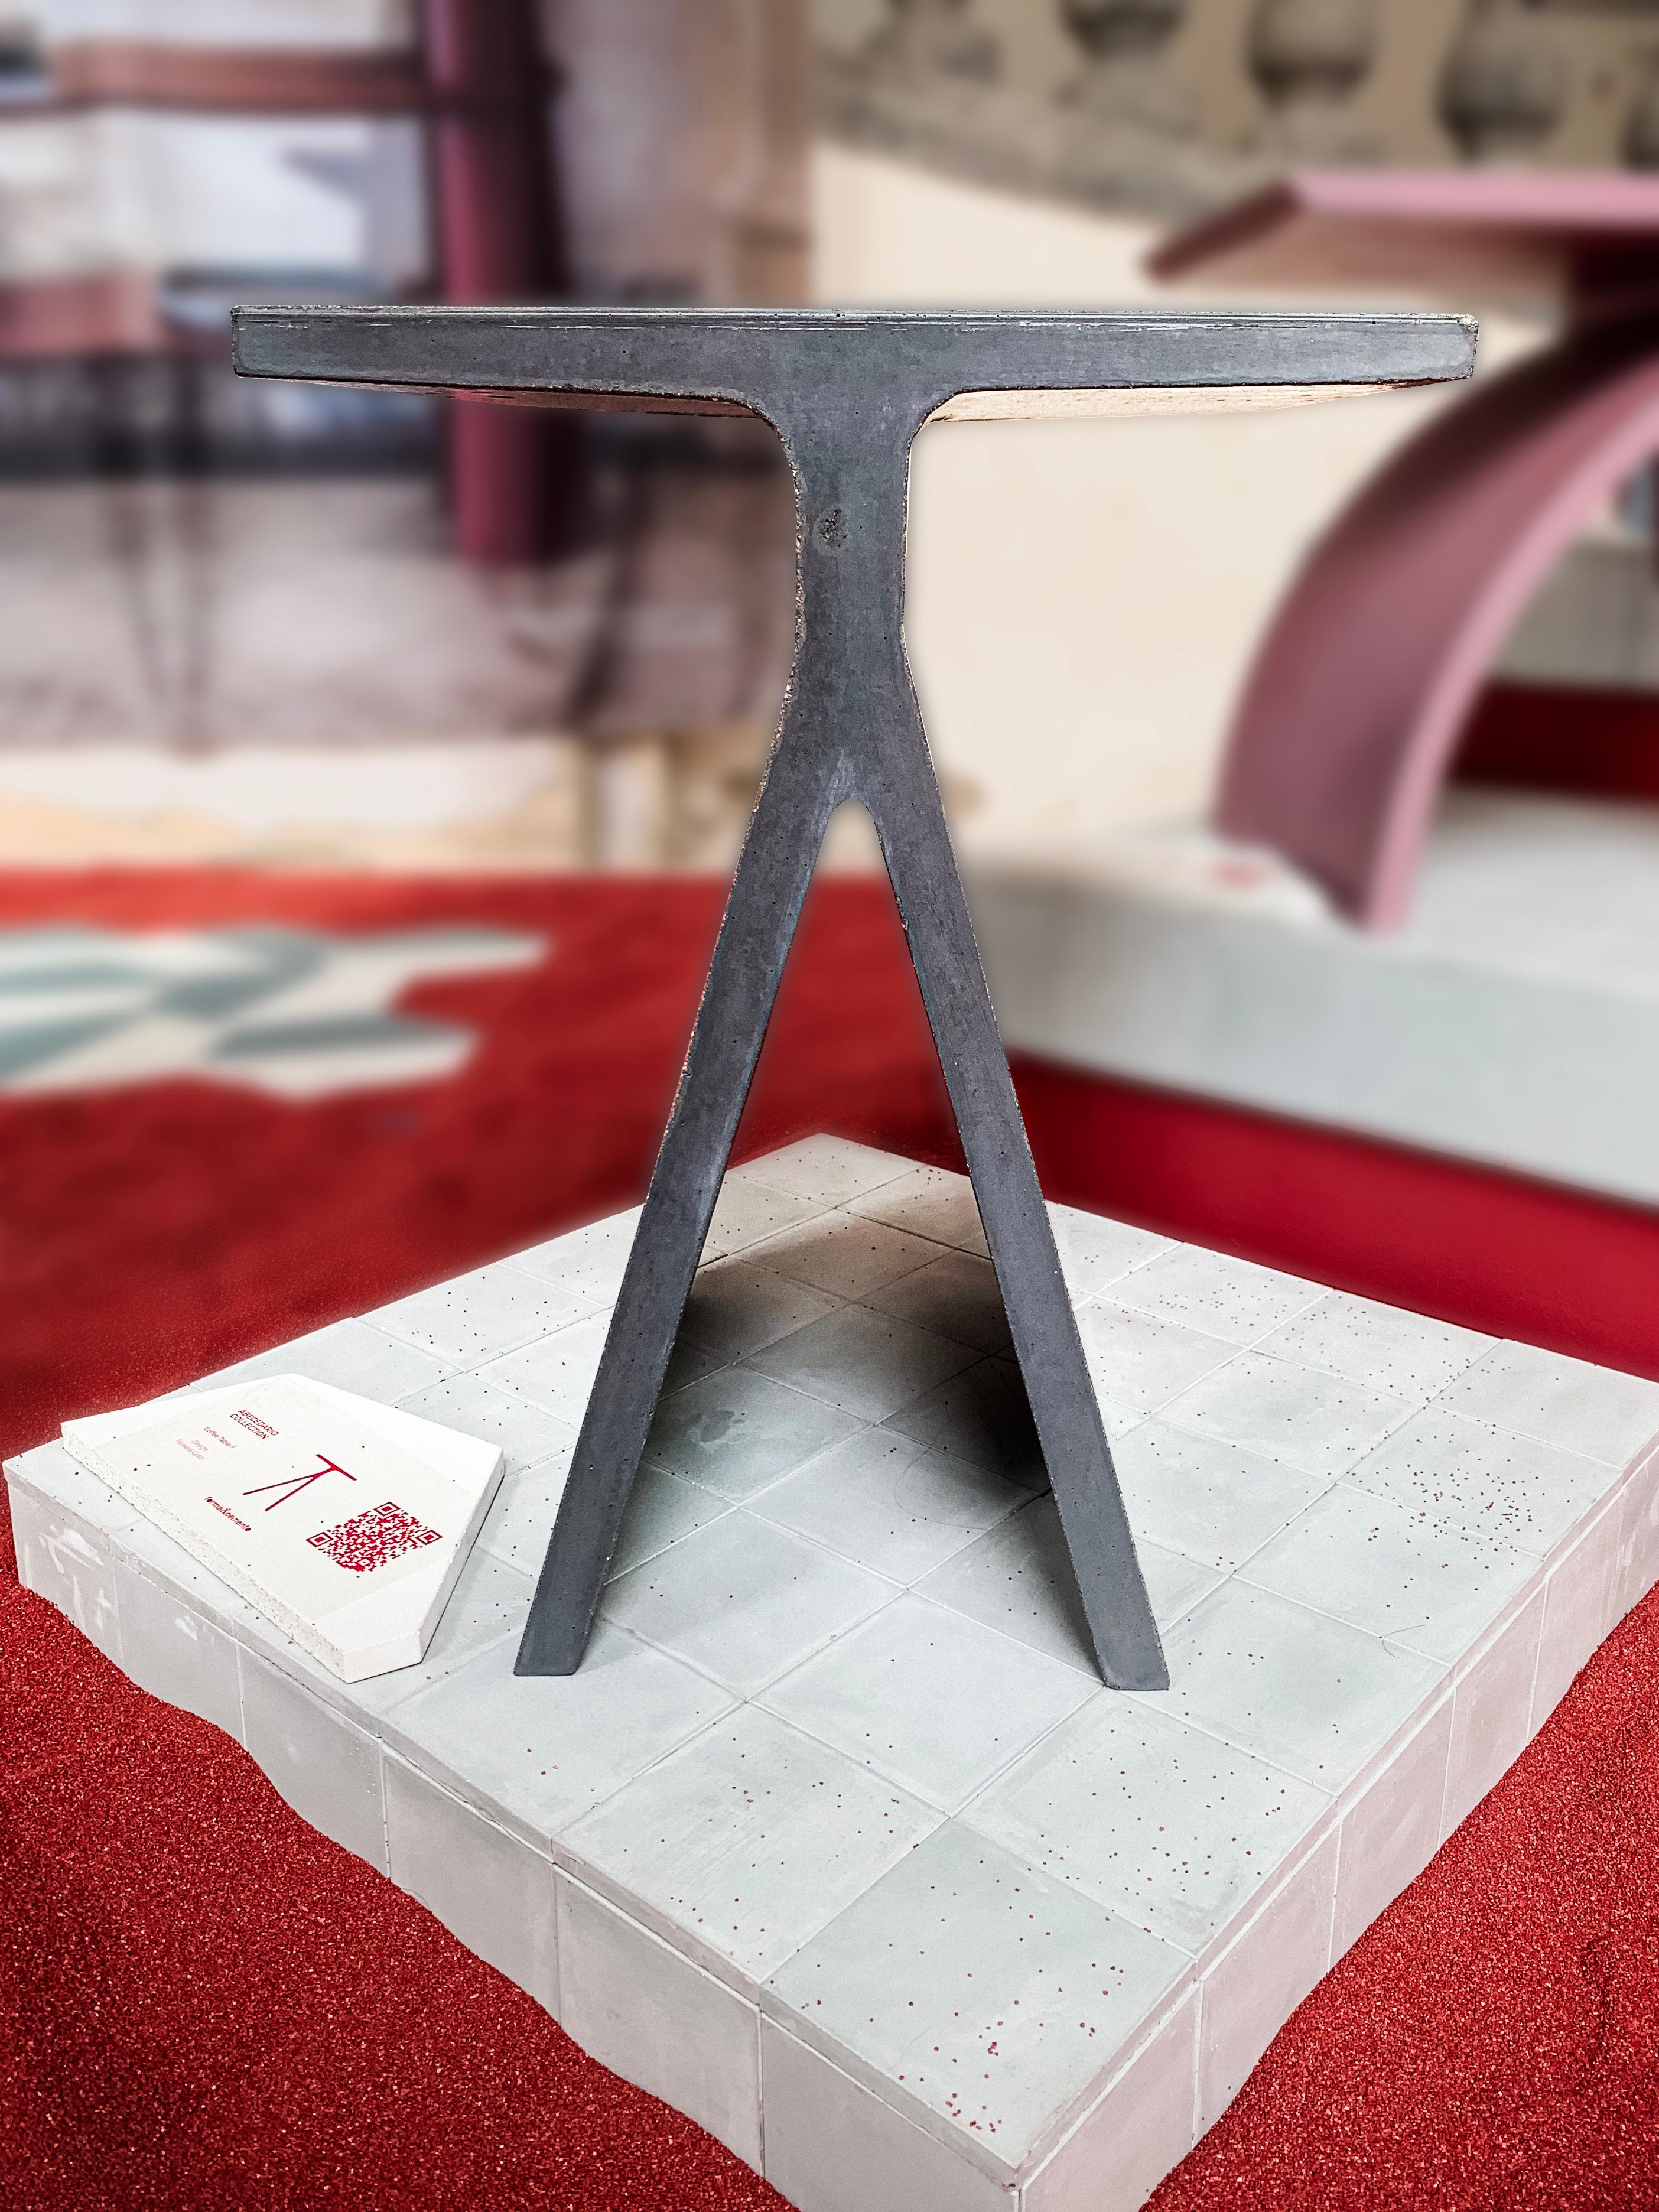 Concrete Side Table 